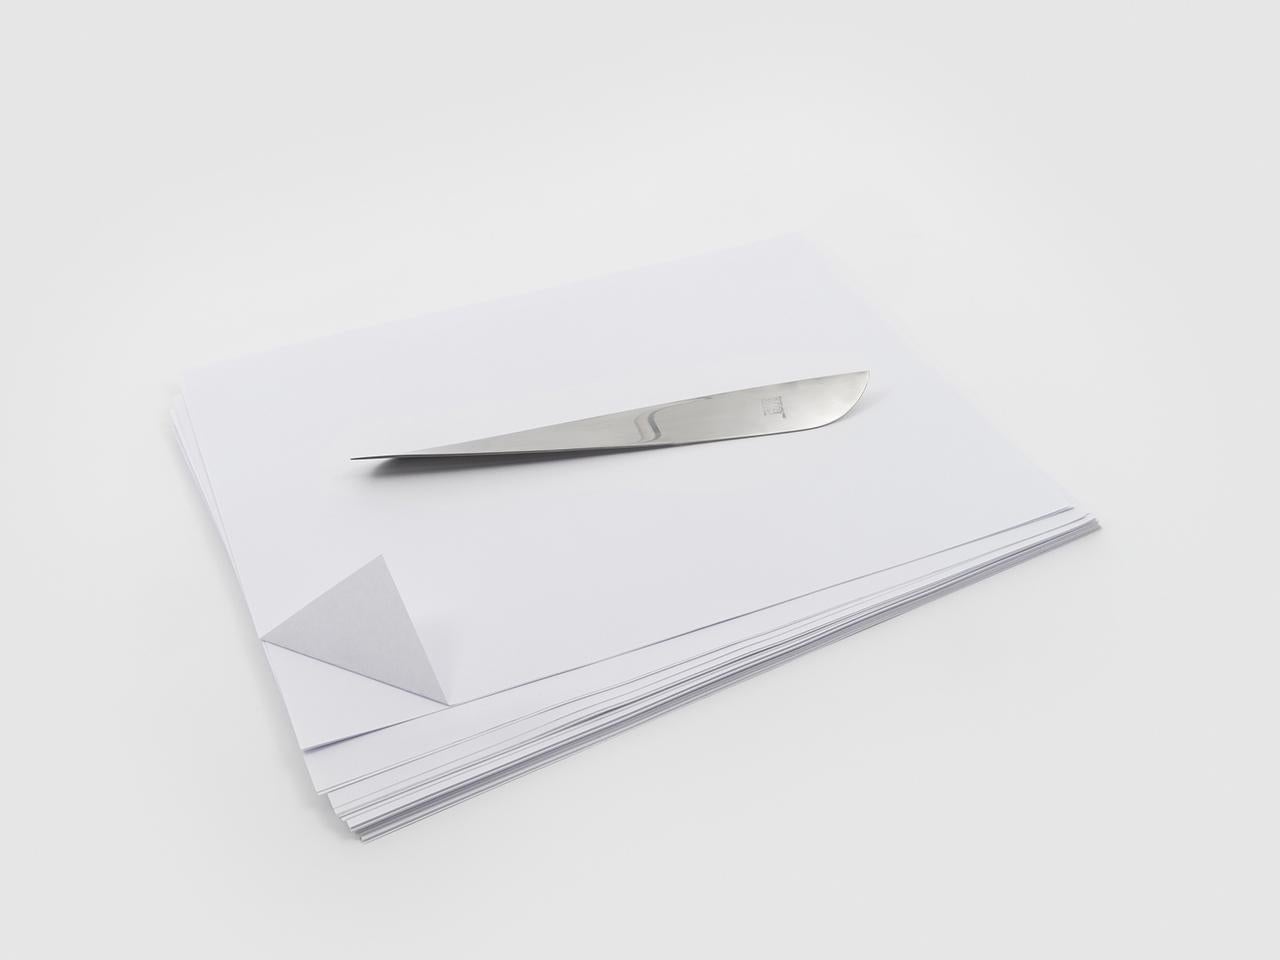 Ameland est un couteau à papier à double tranchant en acier inoxydable satiné et résulte d'une simplification astucieuse du processus de fabrication. La pièce est unique en raison de sa forme courbée caractéristique, semblable à celle d'une hélice,